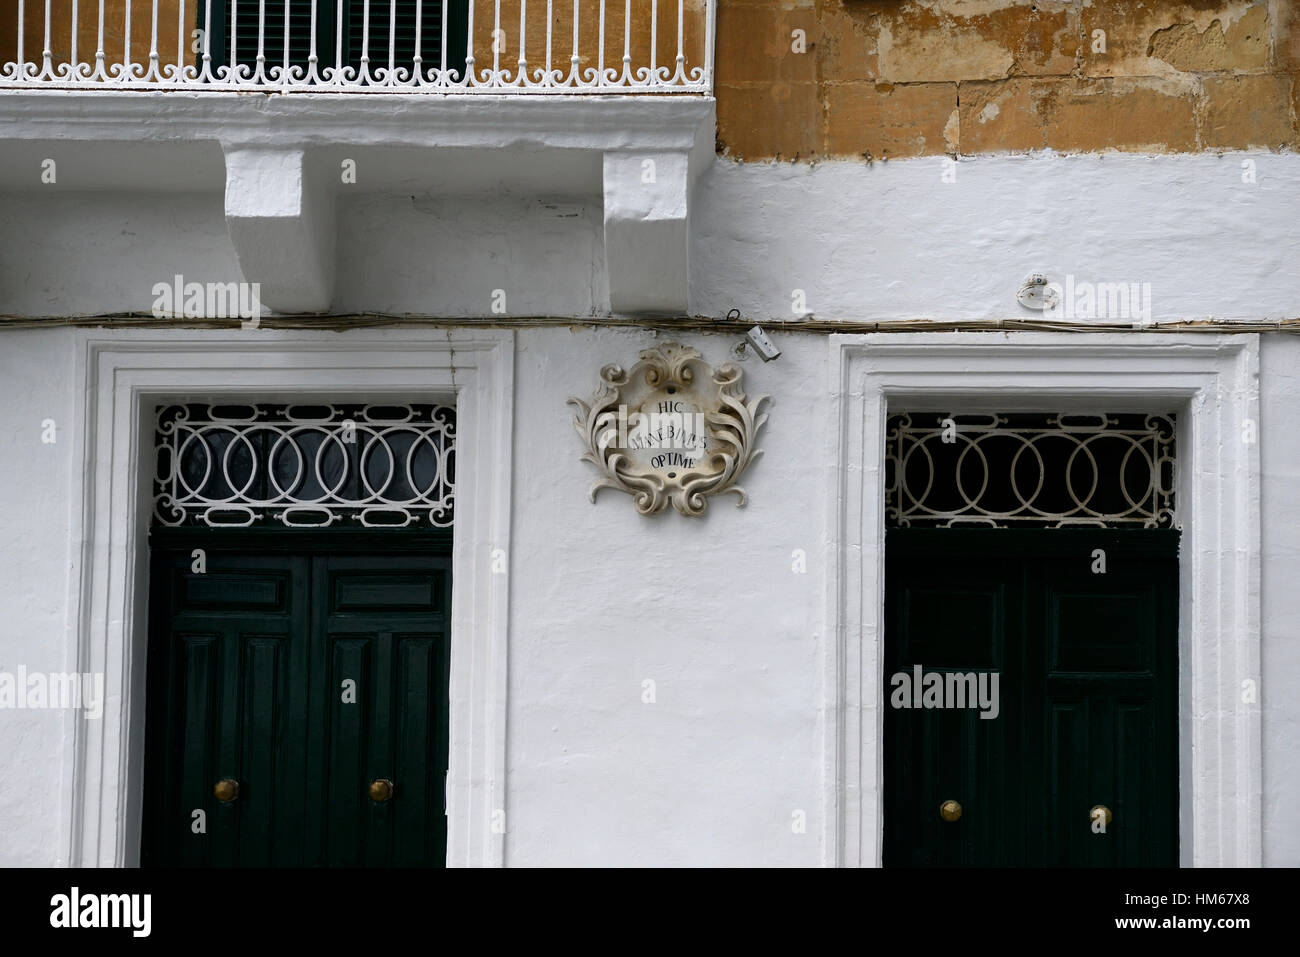 Hic manebimus optime Tito Livio cita signo puerta puerta de entrada casa hpme aquí permaneceremos excelentemente bien Valletta Foto de stock